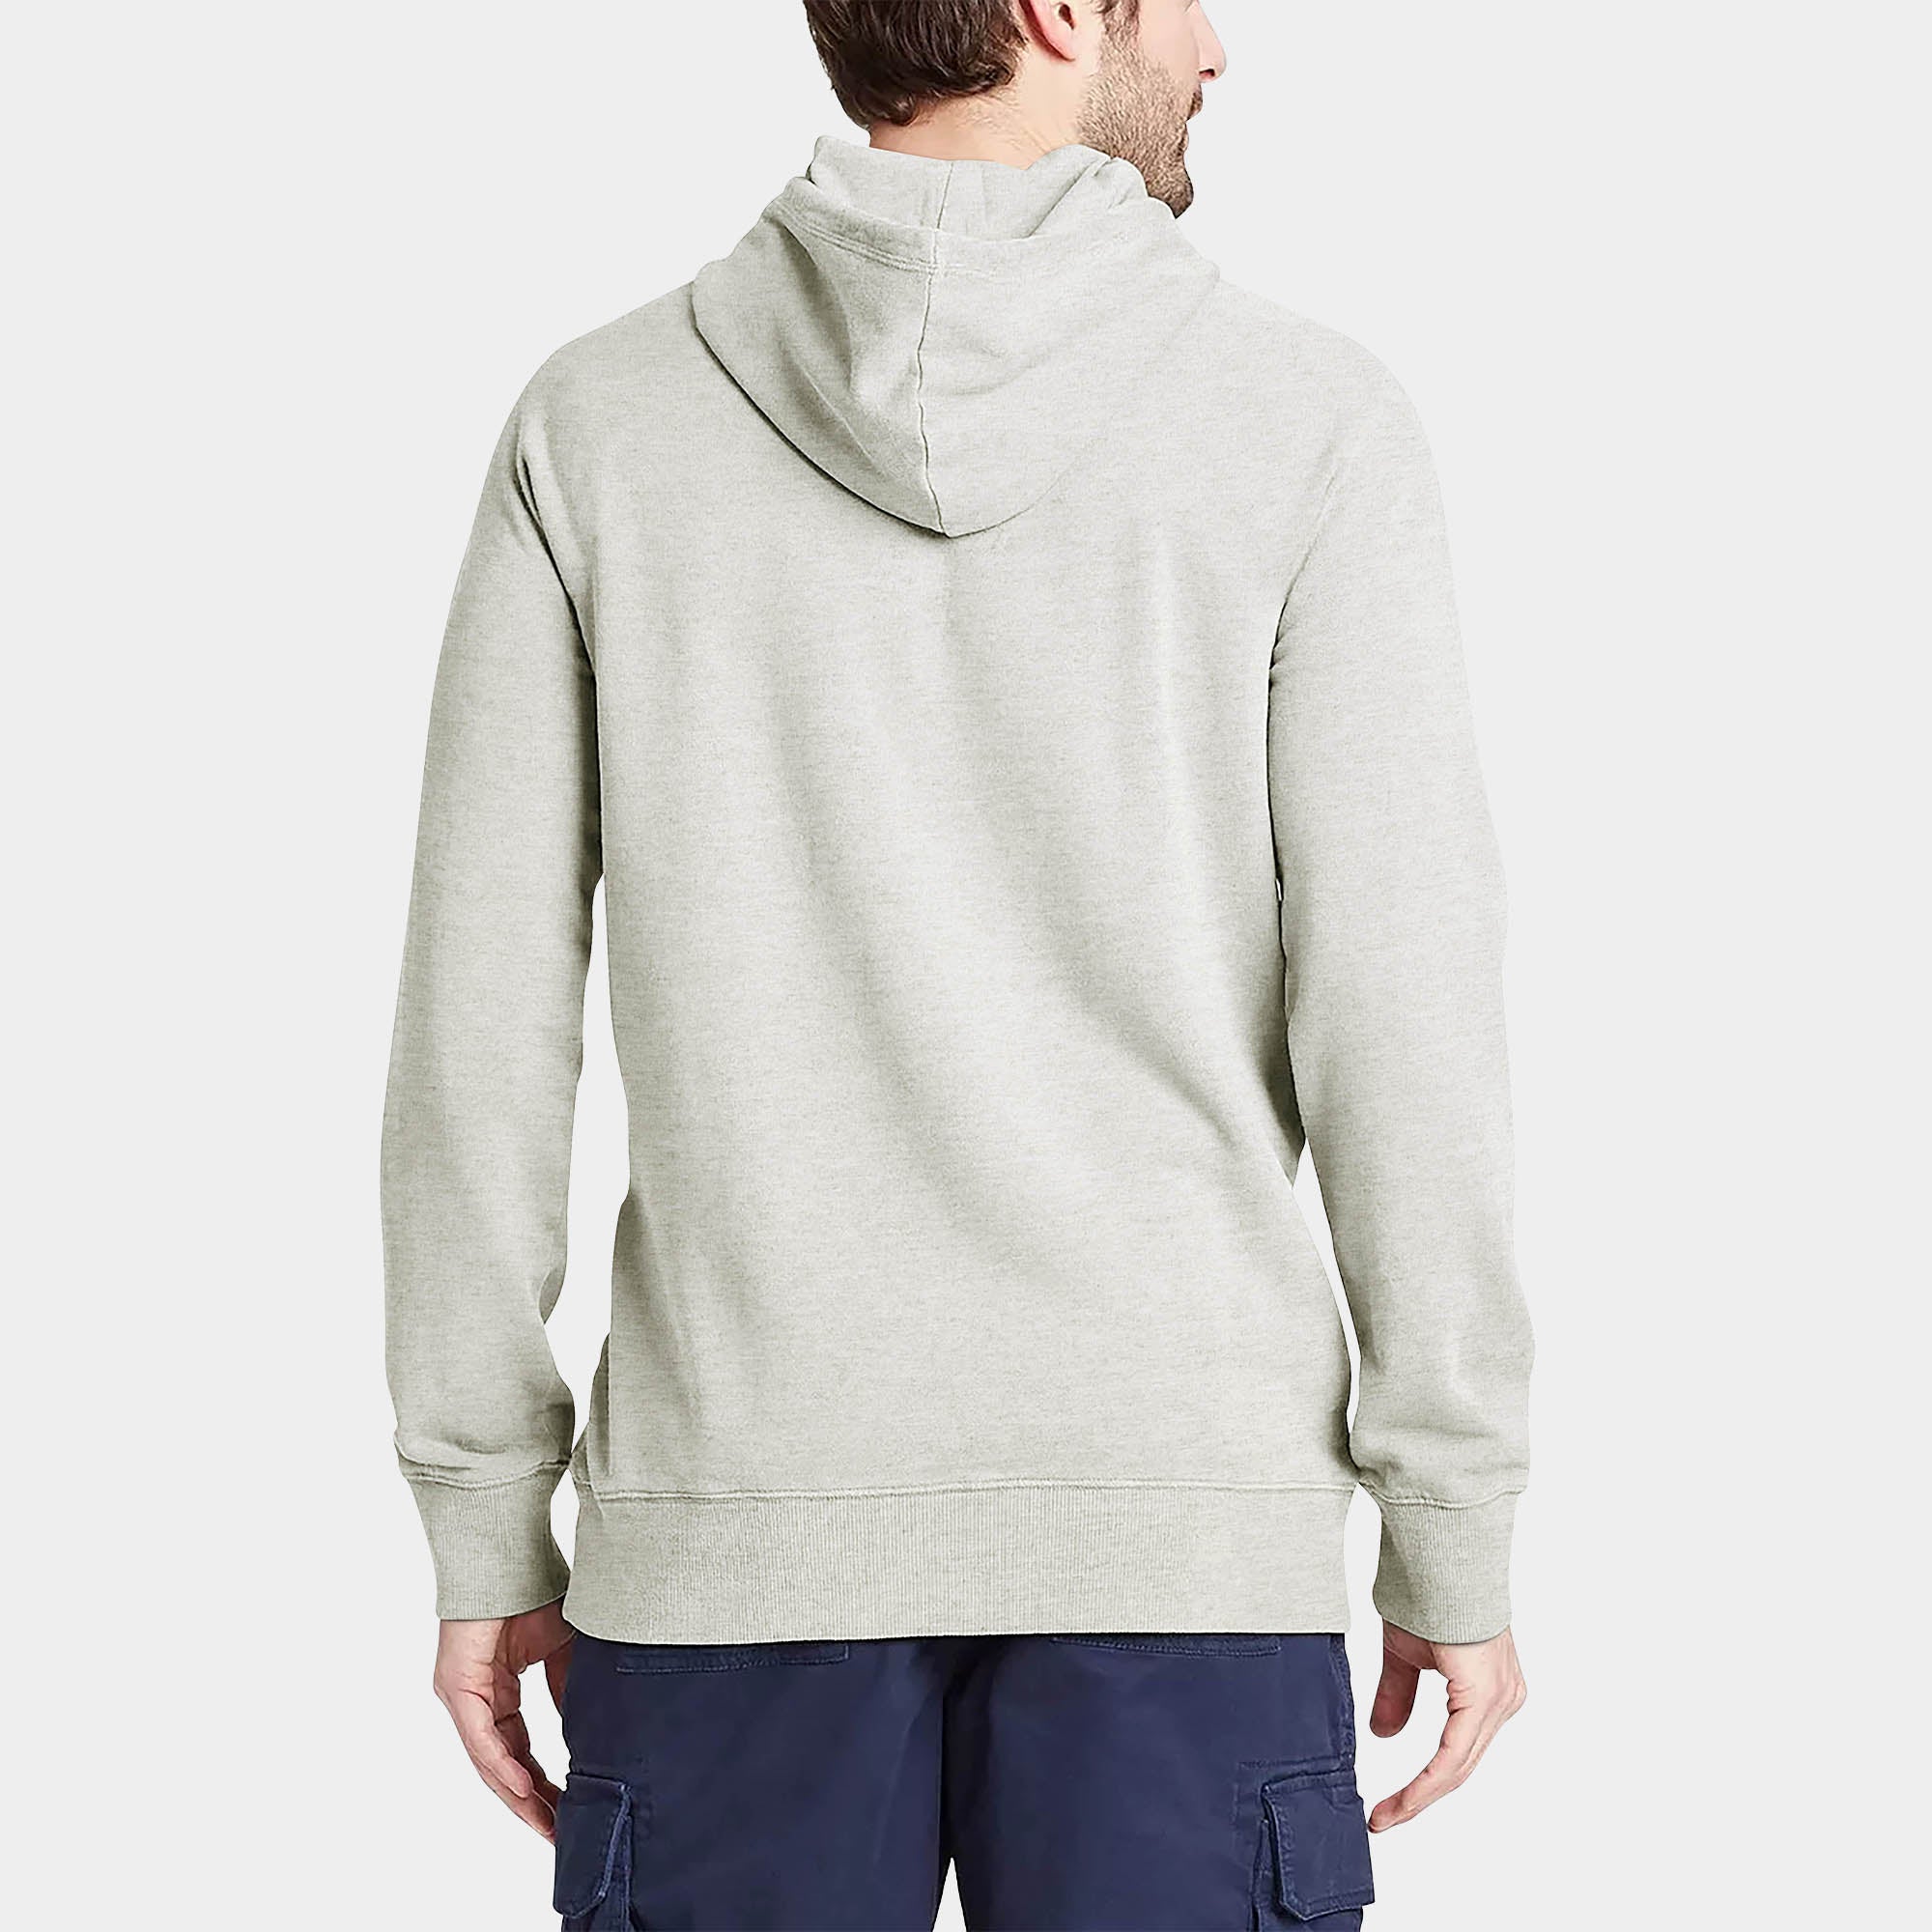 hoodie_hoodies for men_hooded sweatshirt_custom hoodies_cheap hoodies_couple hoodies_pullover hoodie_mens pullover hoodie_Oatmeal